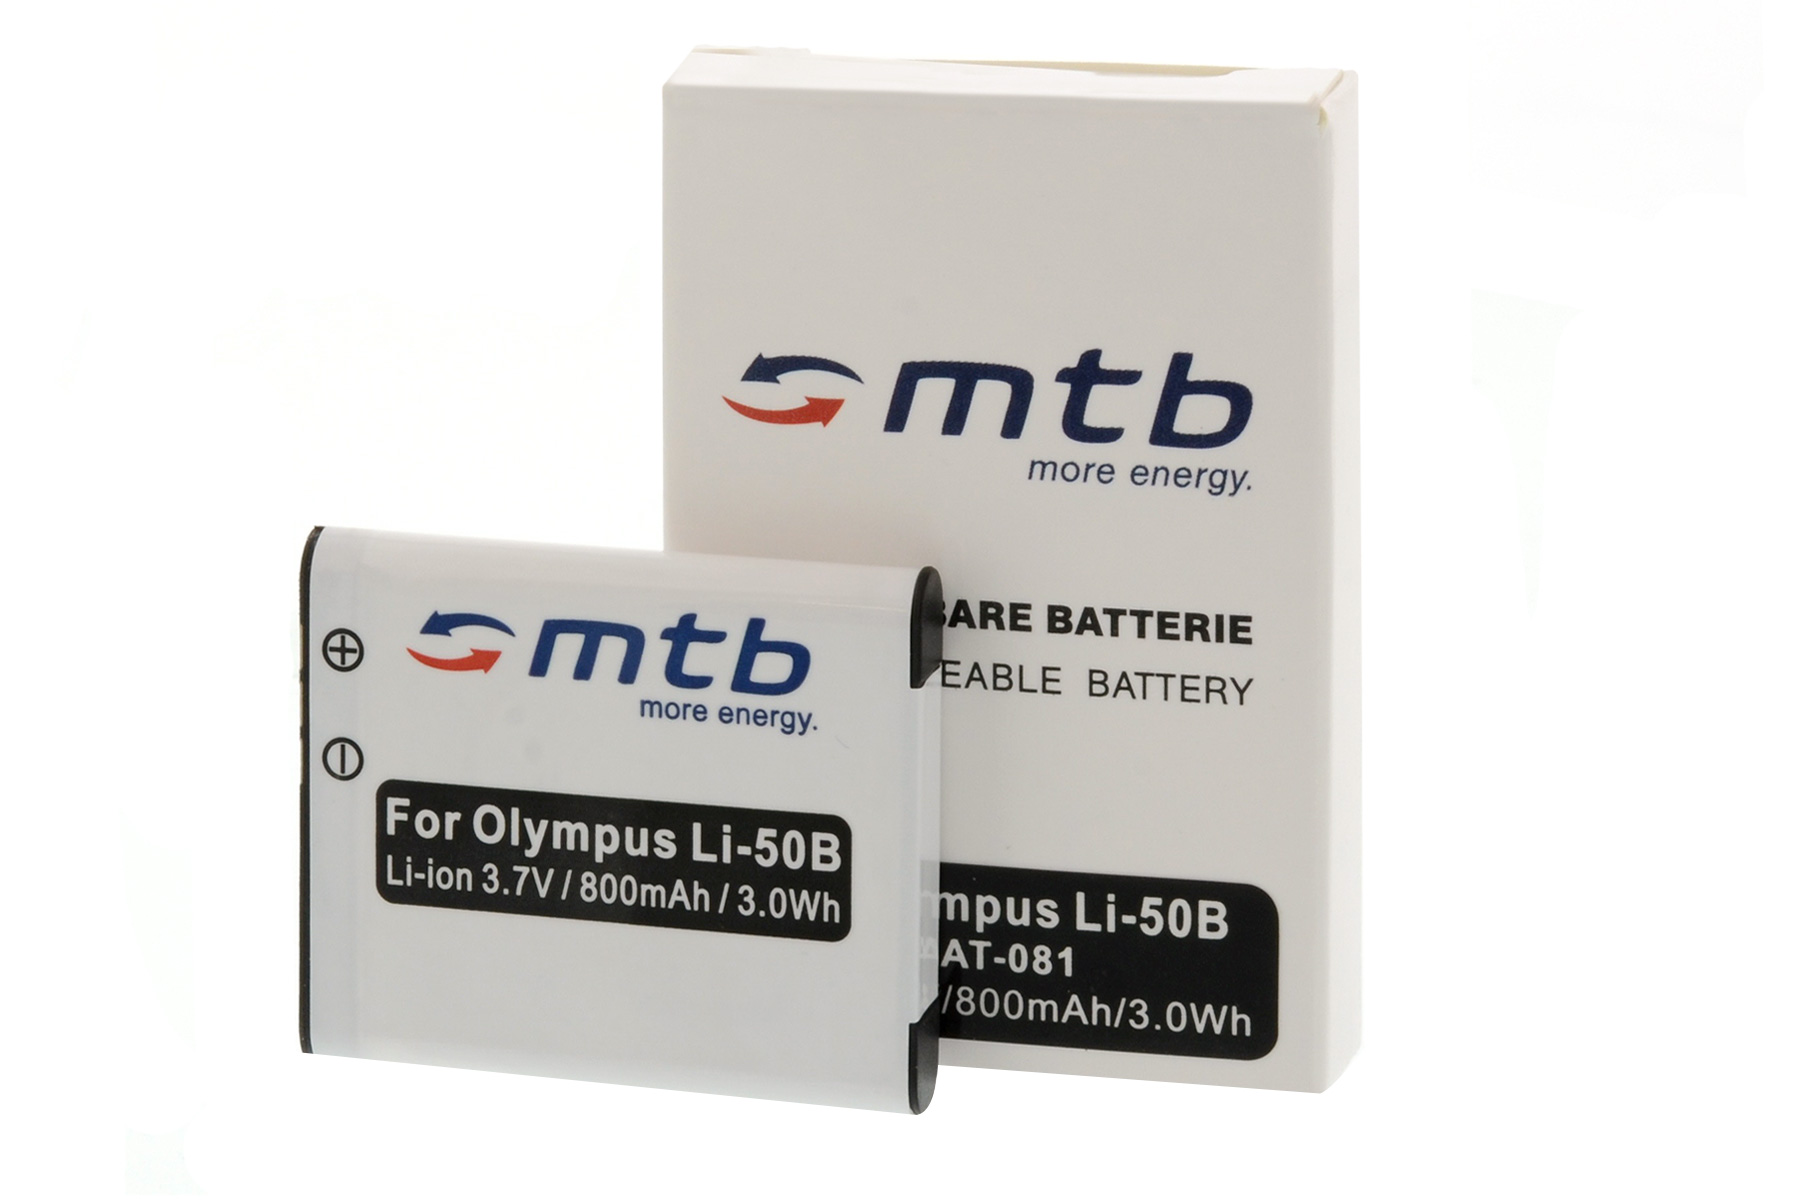 MTB MORE ENERGY 2x BAT-081 Akku, Li-50b mAh Li-Ion, 800